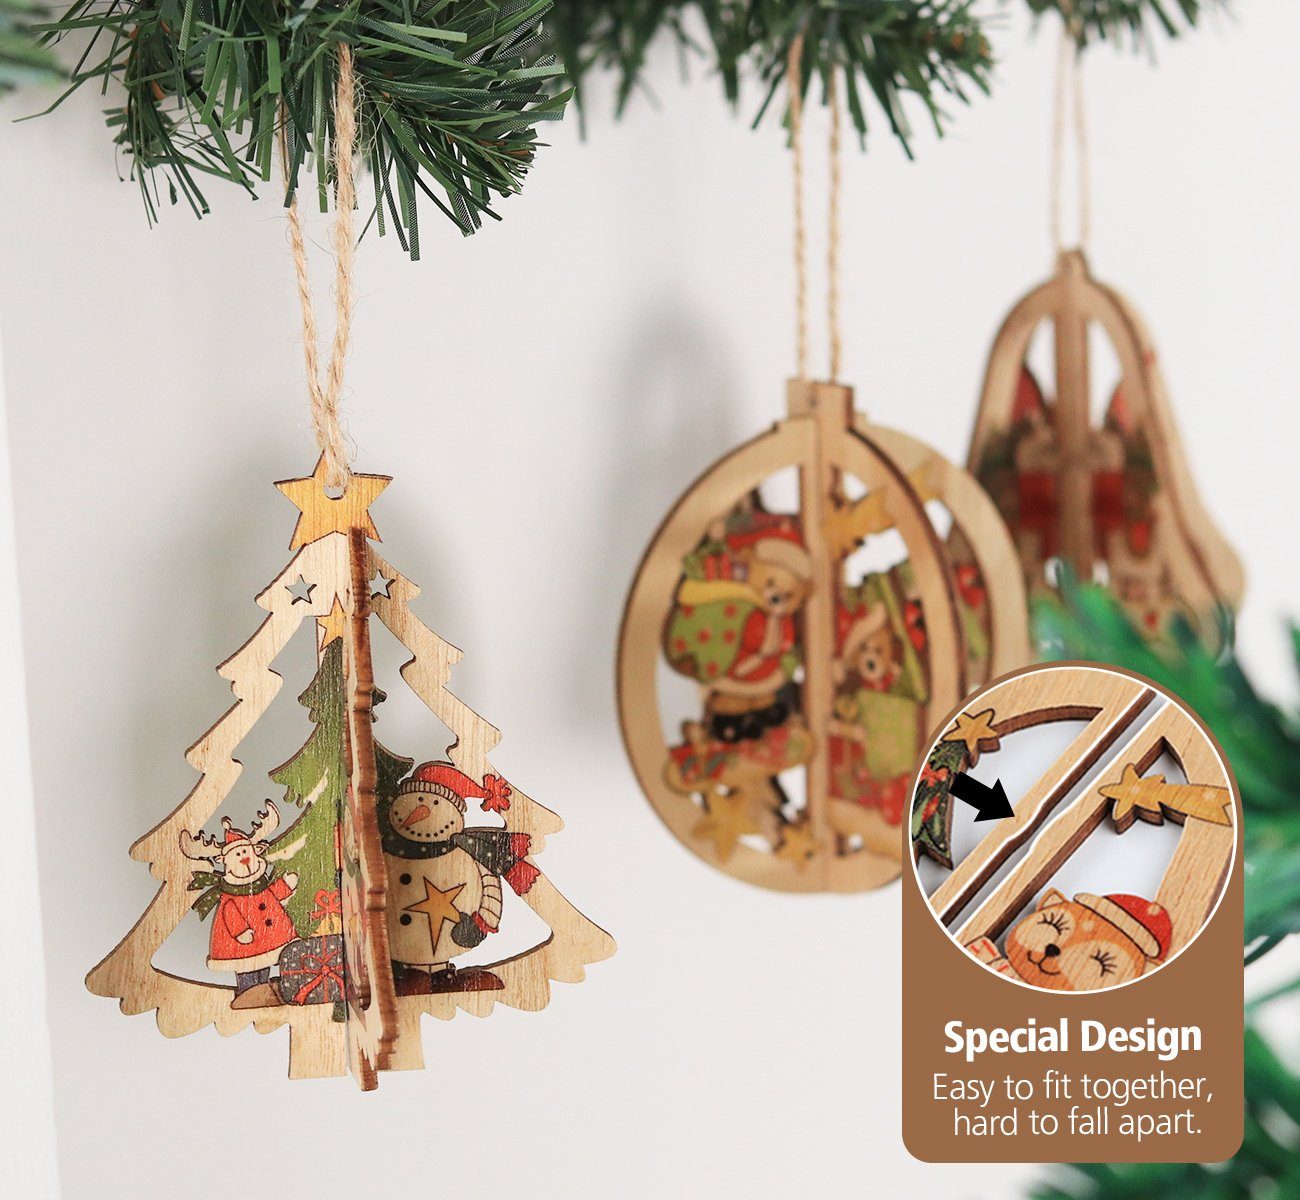 Homewit Christbaumschmuck Weihnachtsbaumschmuck Weihnachtsglocken für Holz Weihnachtsbaum Ornamenten Weihnachtsmann Anhänger 3D Holz (6-tlg), Weihnachtsbaum Dekoration